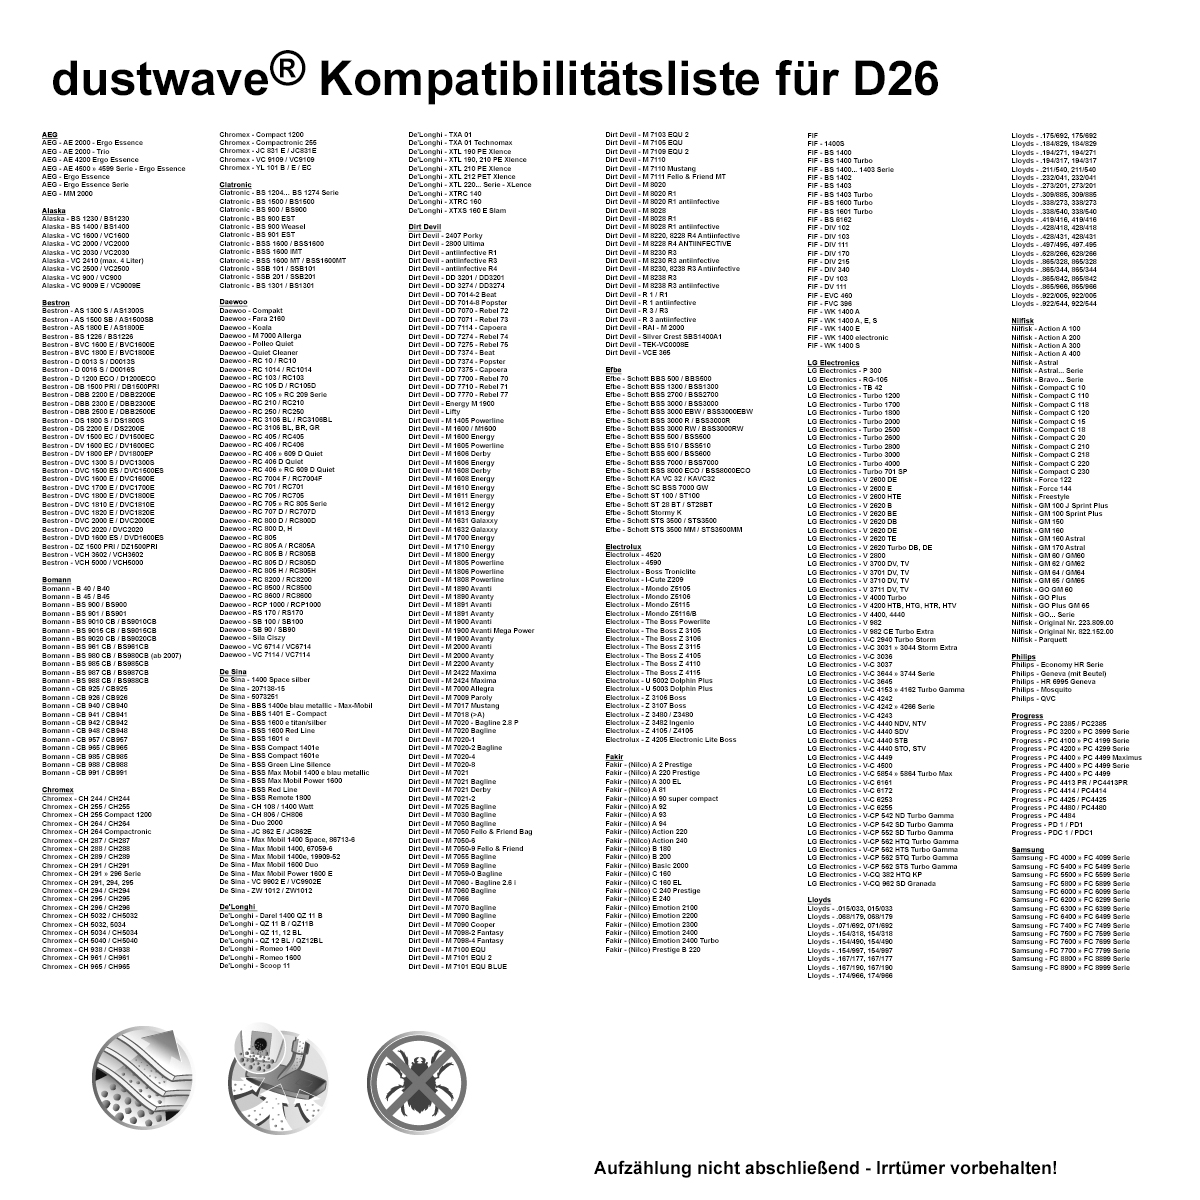 Dustwave® 1 Staubsaugerbeutel für Base BA 1900 - hocheffizient mit Hygieneverschluss - Made in Germany